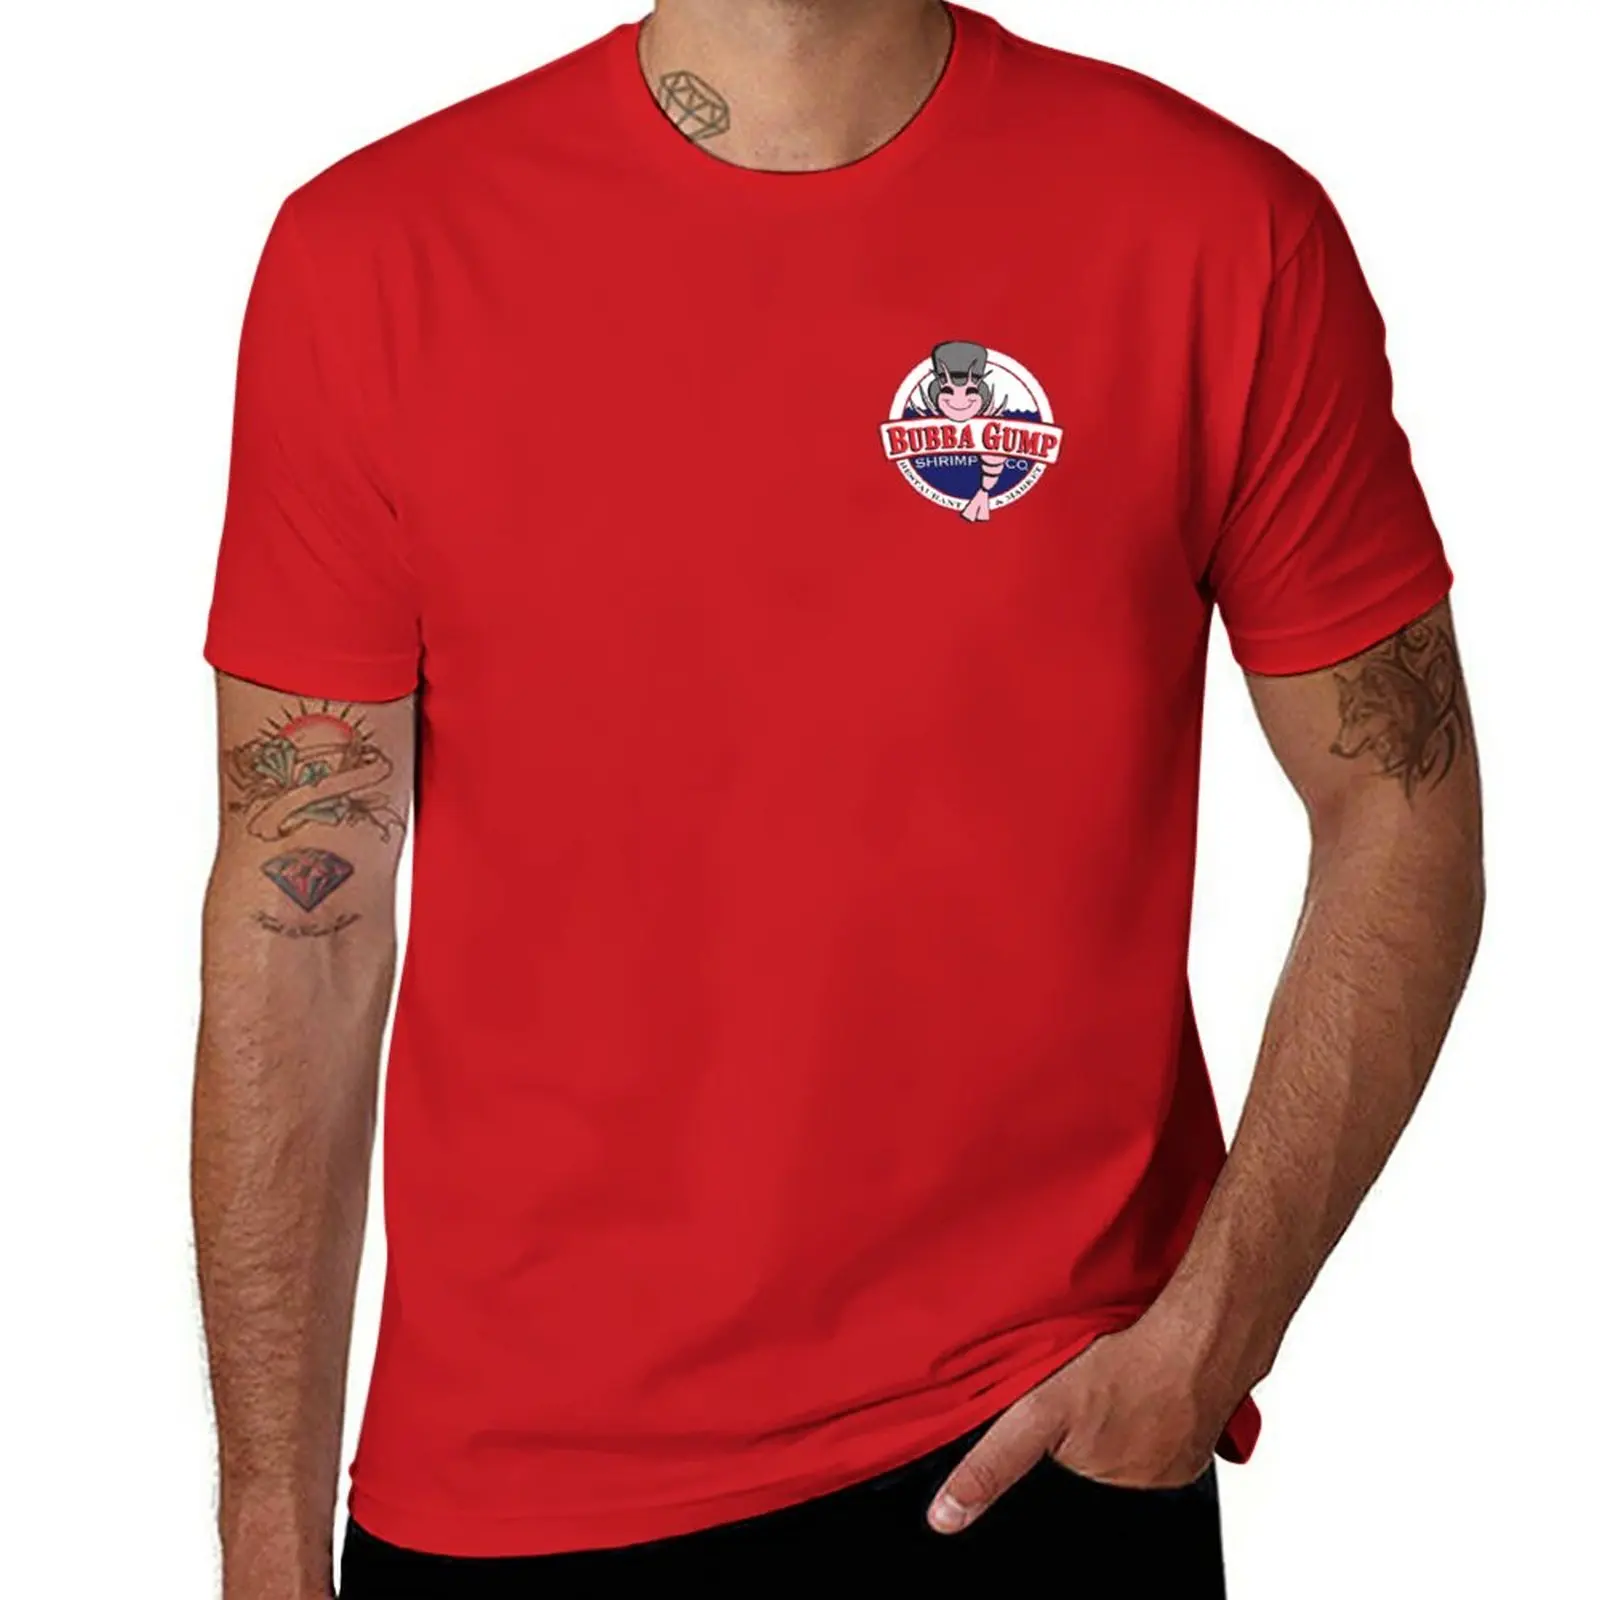 Bubba Gump Shrimp co. Футболка, быстросохнущая футболка, великолепная футболка, мужские забавные футболки Изображение 0